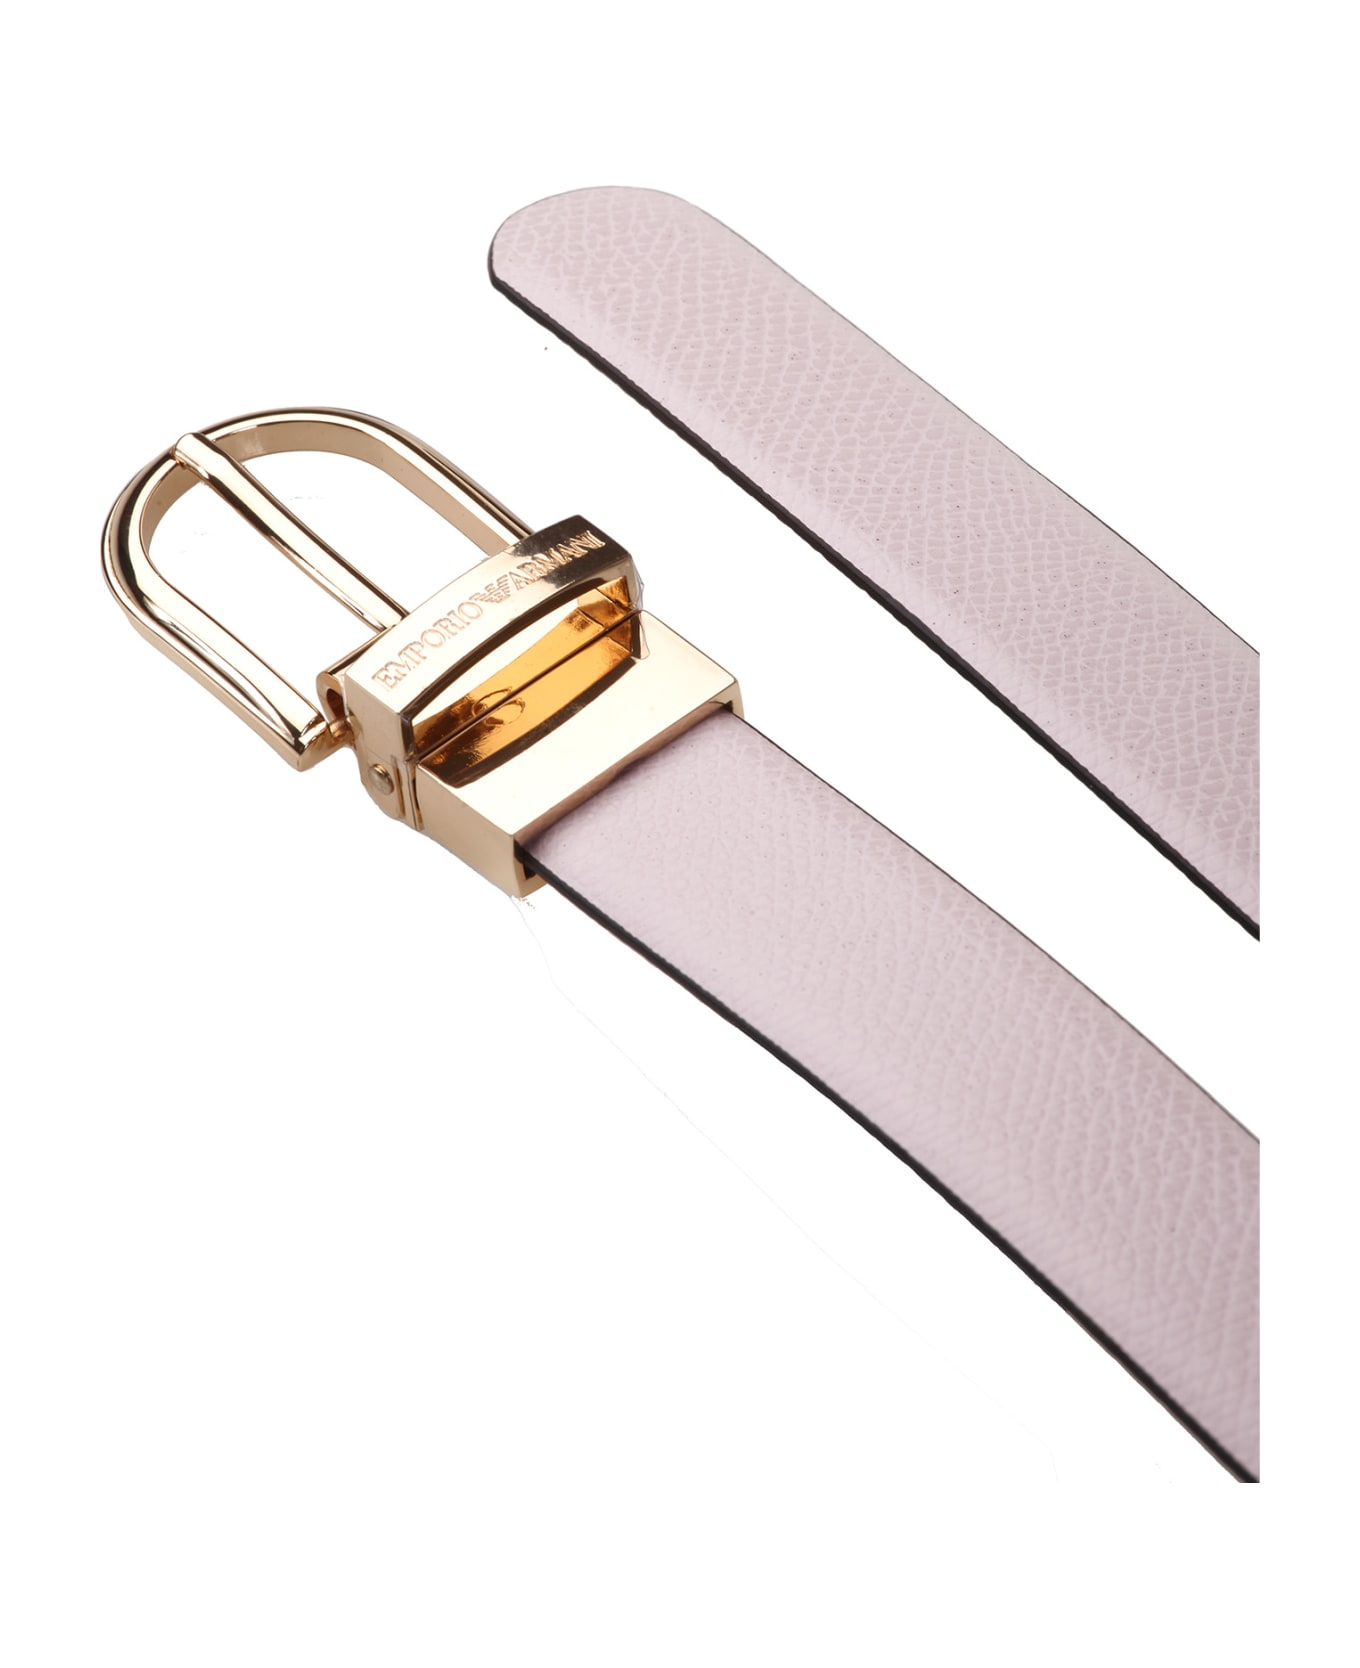 Emporio Armani Belts Pink - Pink ベルト